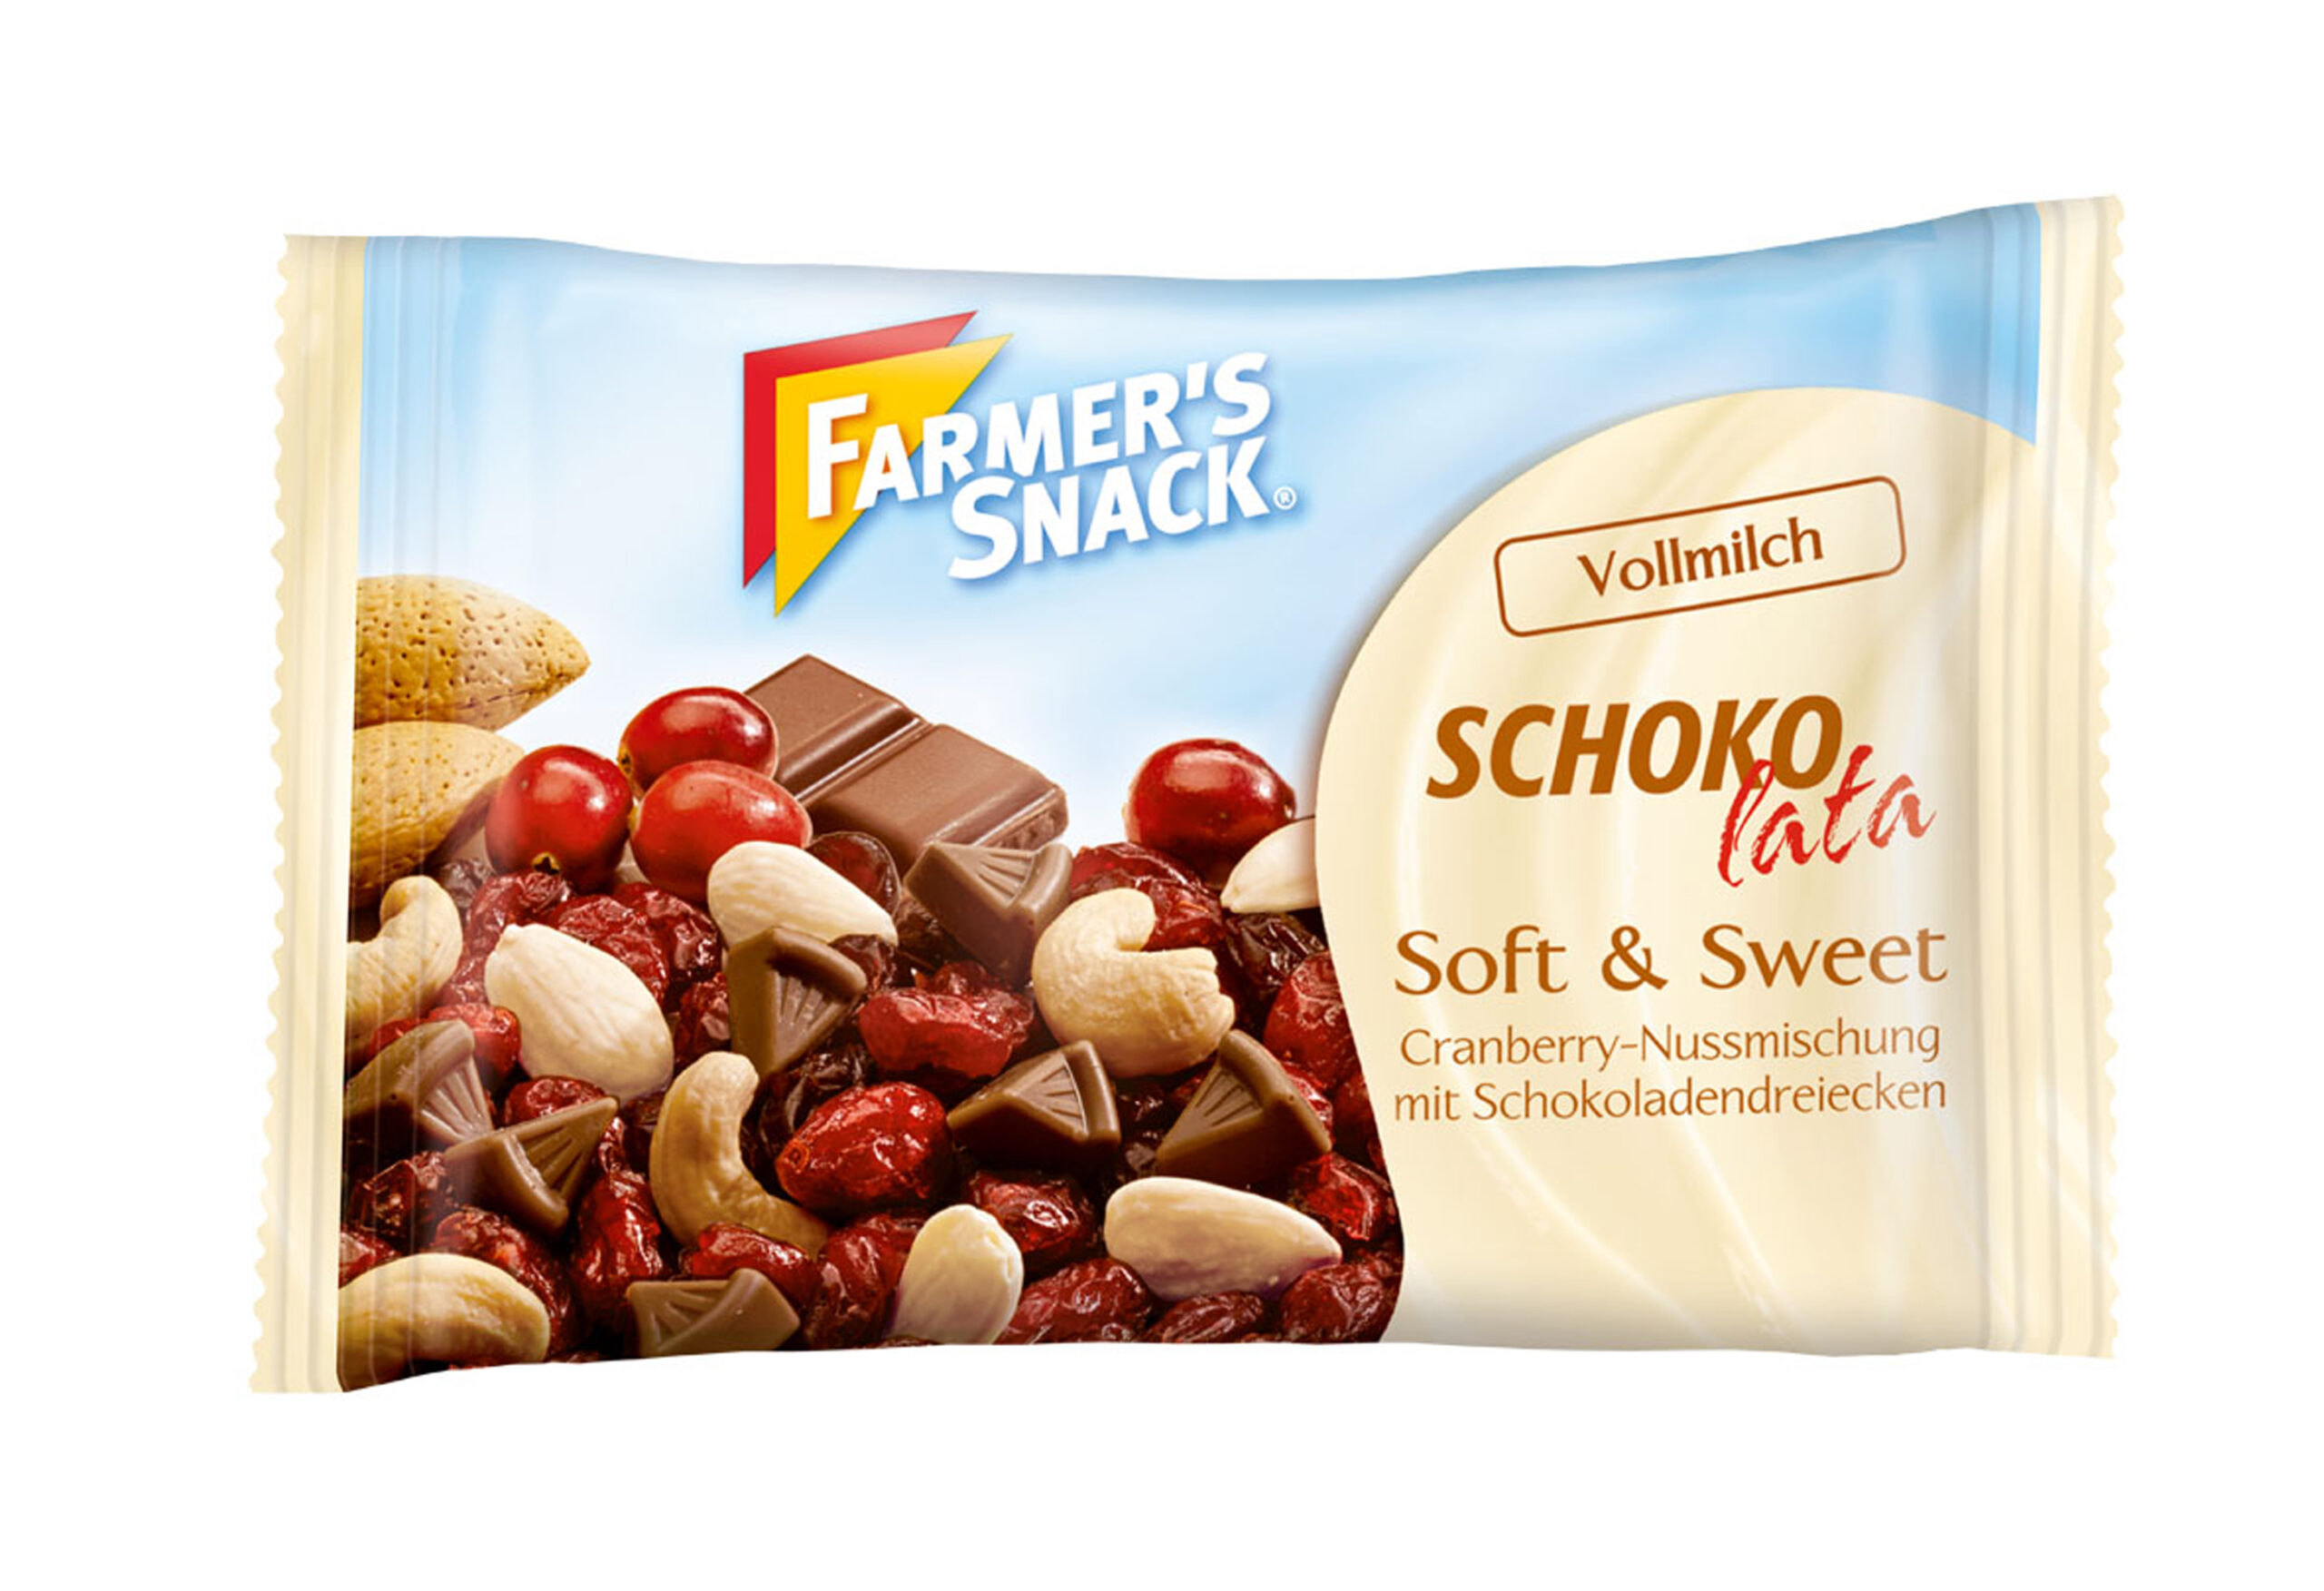 Schokolata Pocket<br>(FARMER’S SNACK)